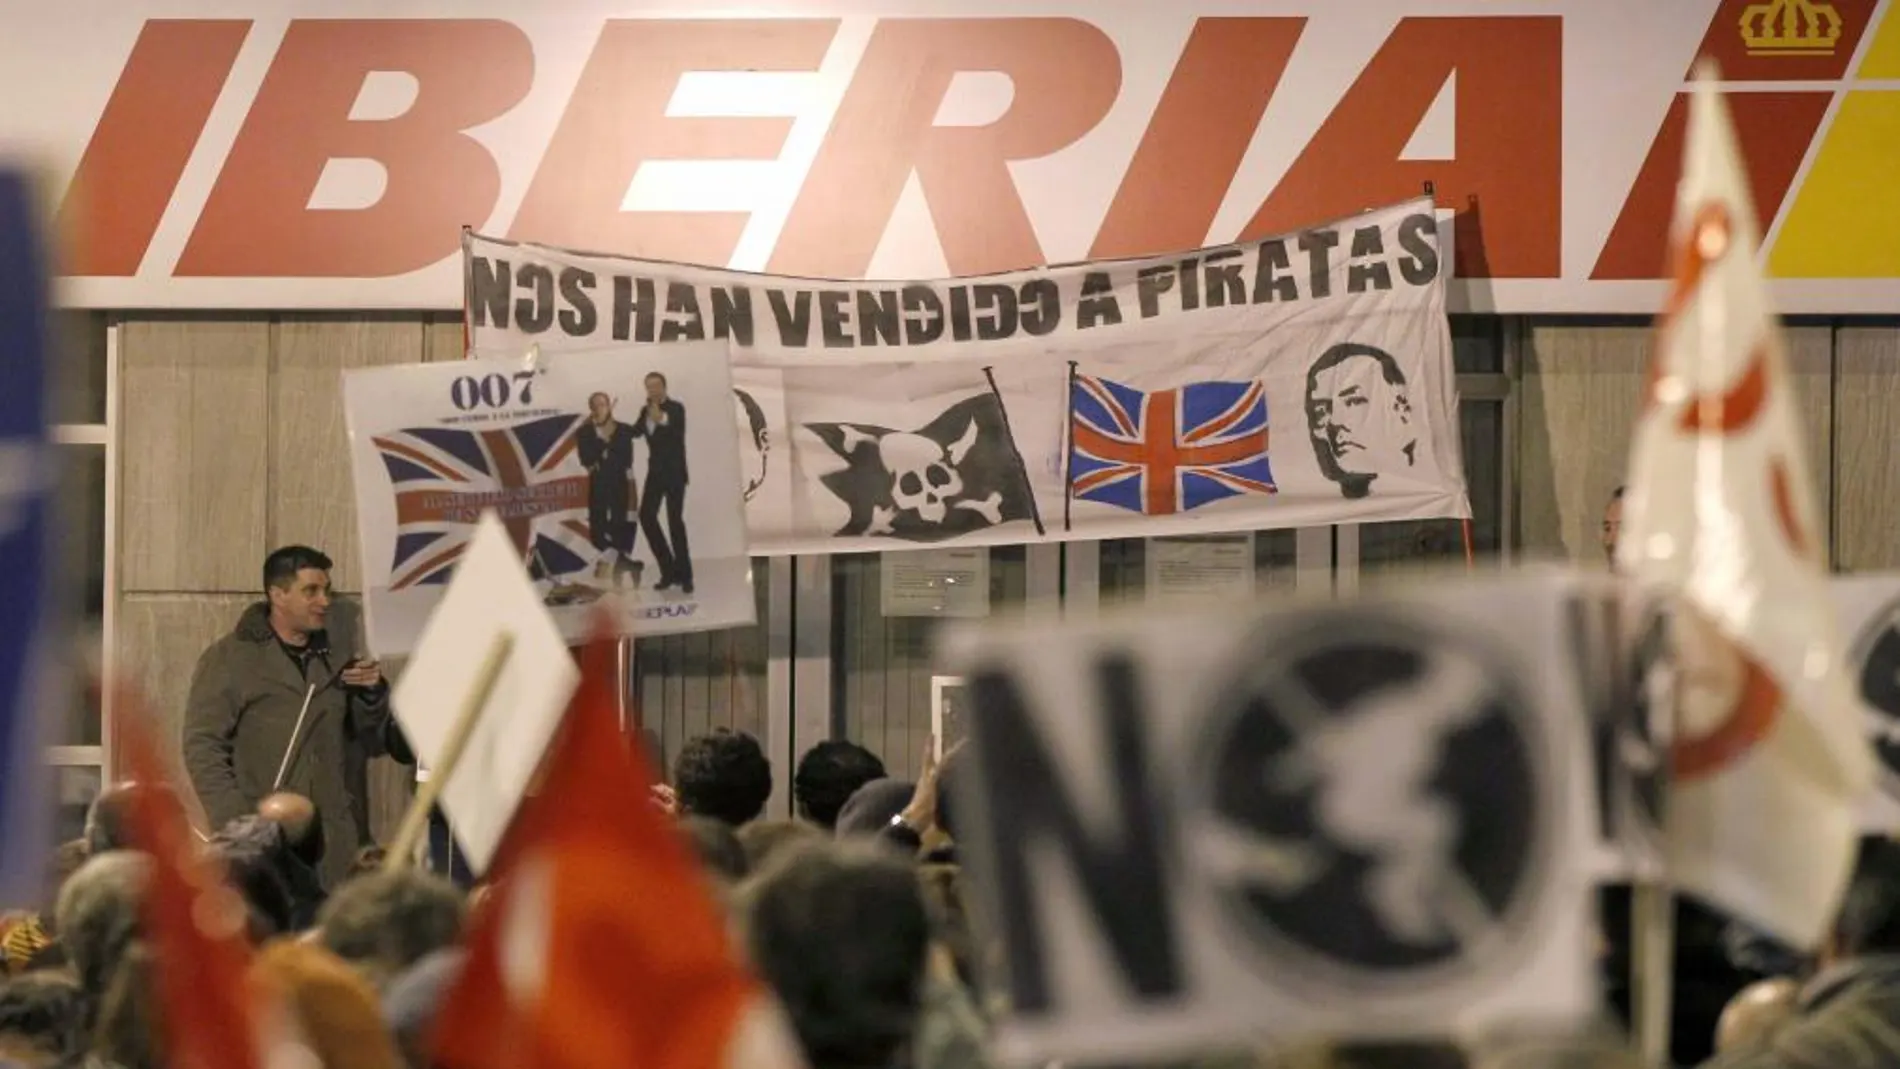 Algunas de las pancartas desplegadas en la manifestación convocada esta tarde en Madrid por los sindicatos de Iberia en defensa de los puestos de trabajo y por el futuro de la aerolínea, cuyo plan de reestructuración afectaría a 4.500 empleos en la empresa. EFE/Chema Moya